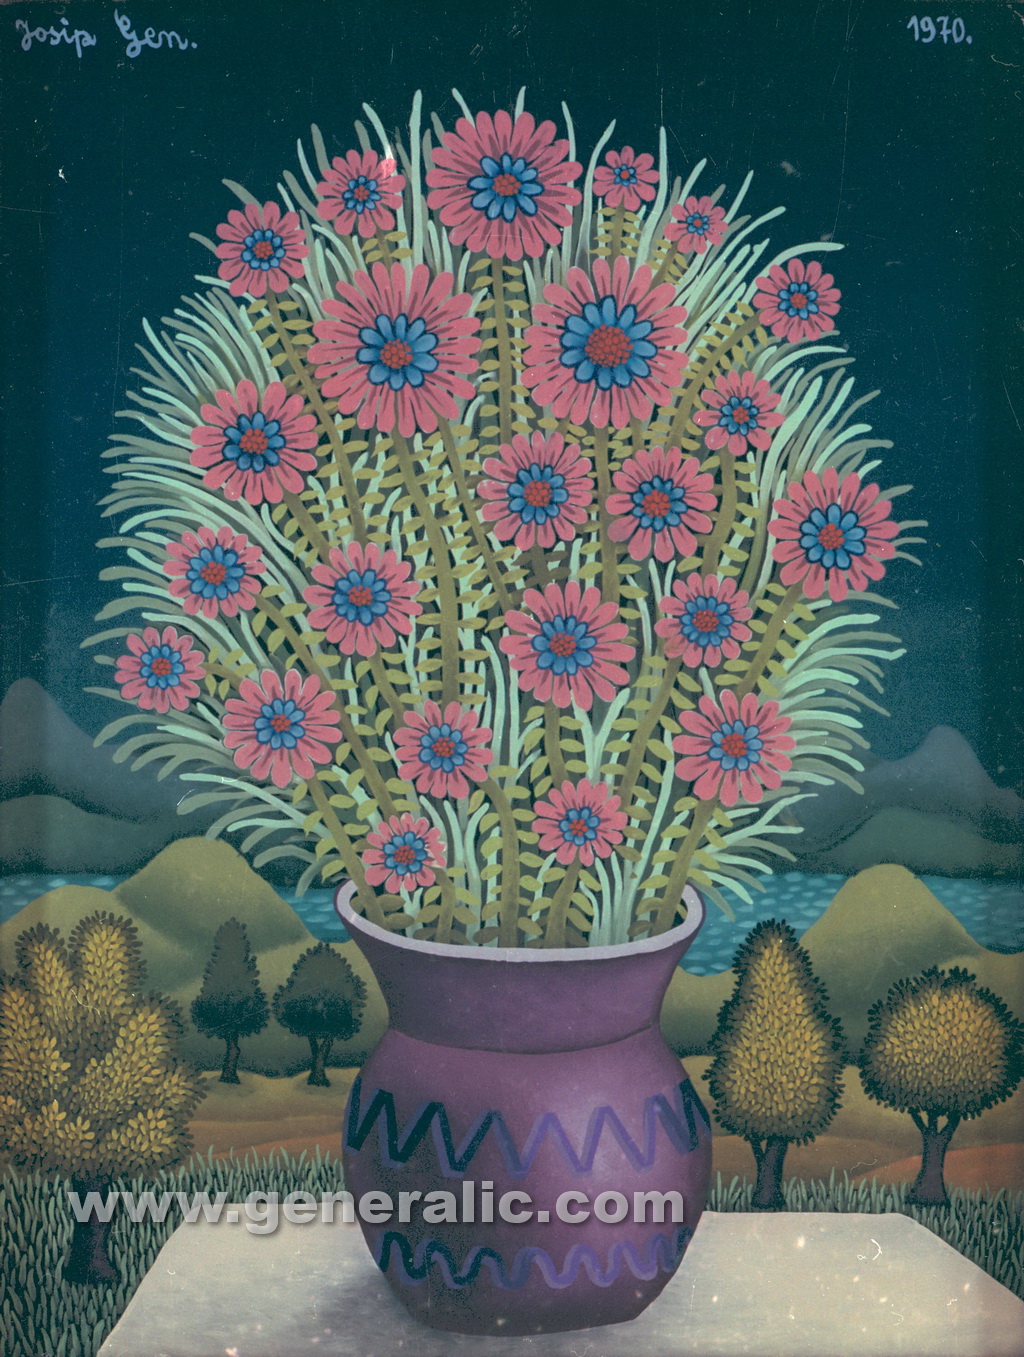 Josip Generalic, 1970, Flowers in purple pot, oil on glass